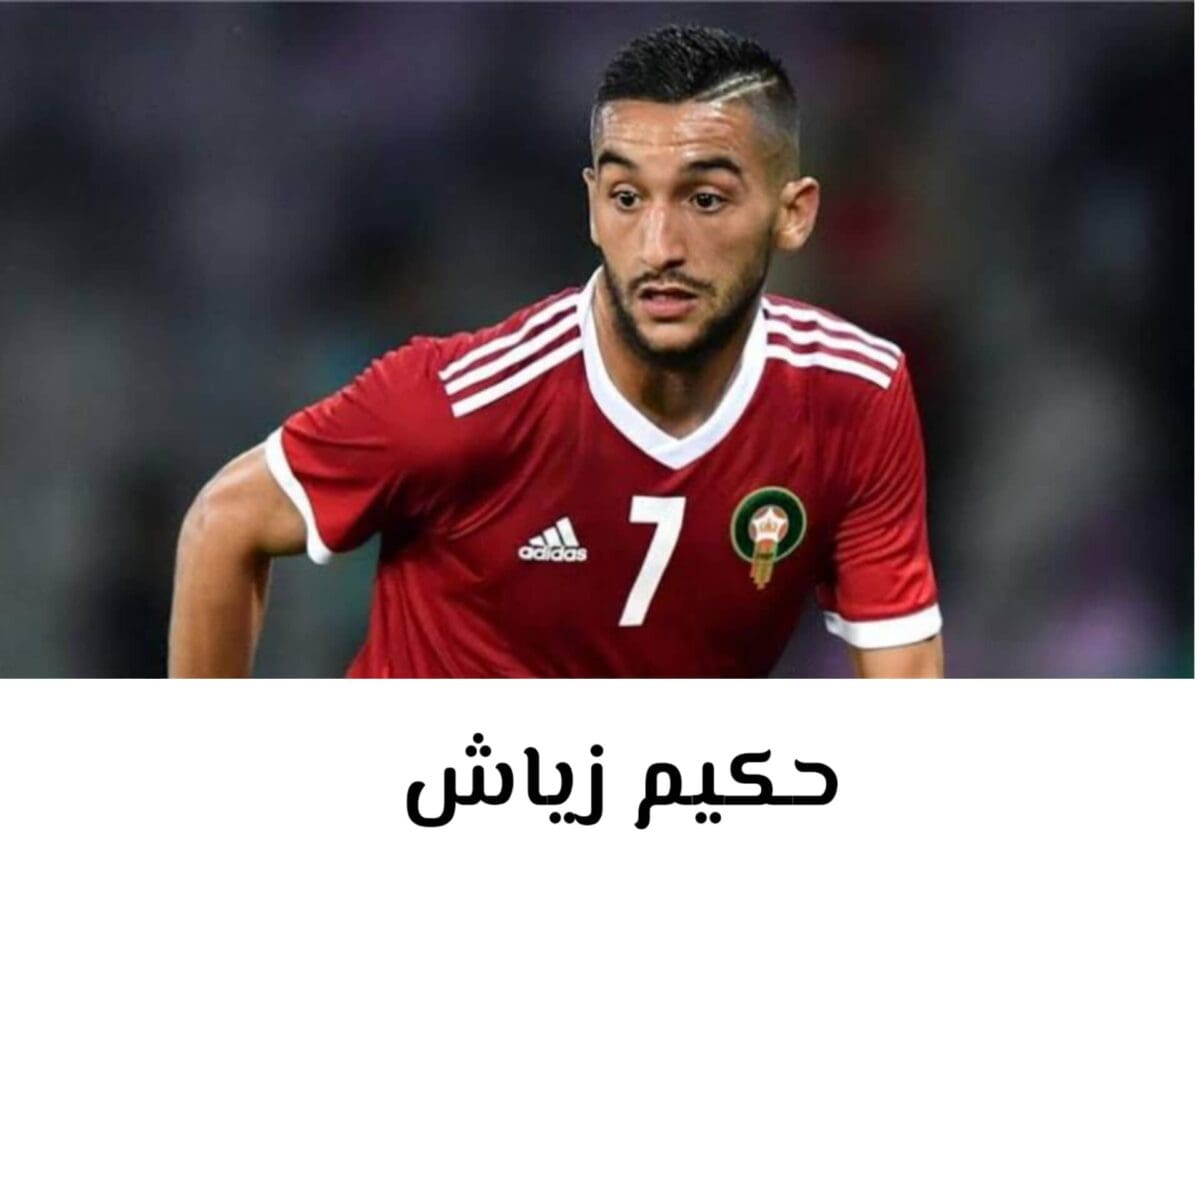 حكيم زياش لاعب نادي تشيلسي الإنجليزي ومنتخب المغرب